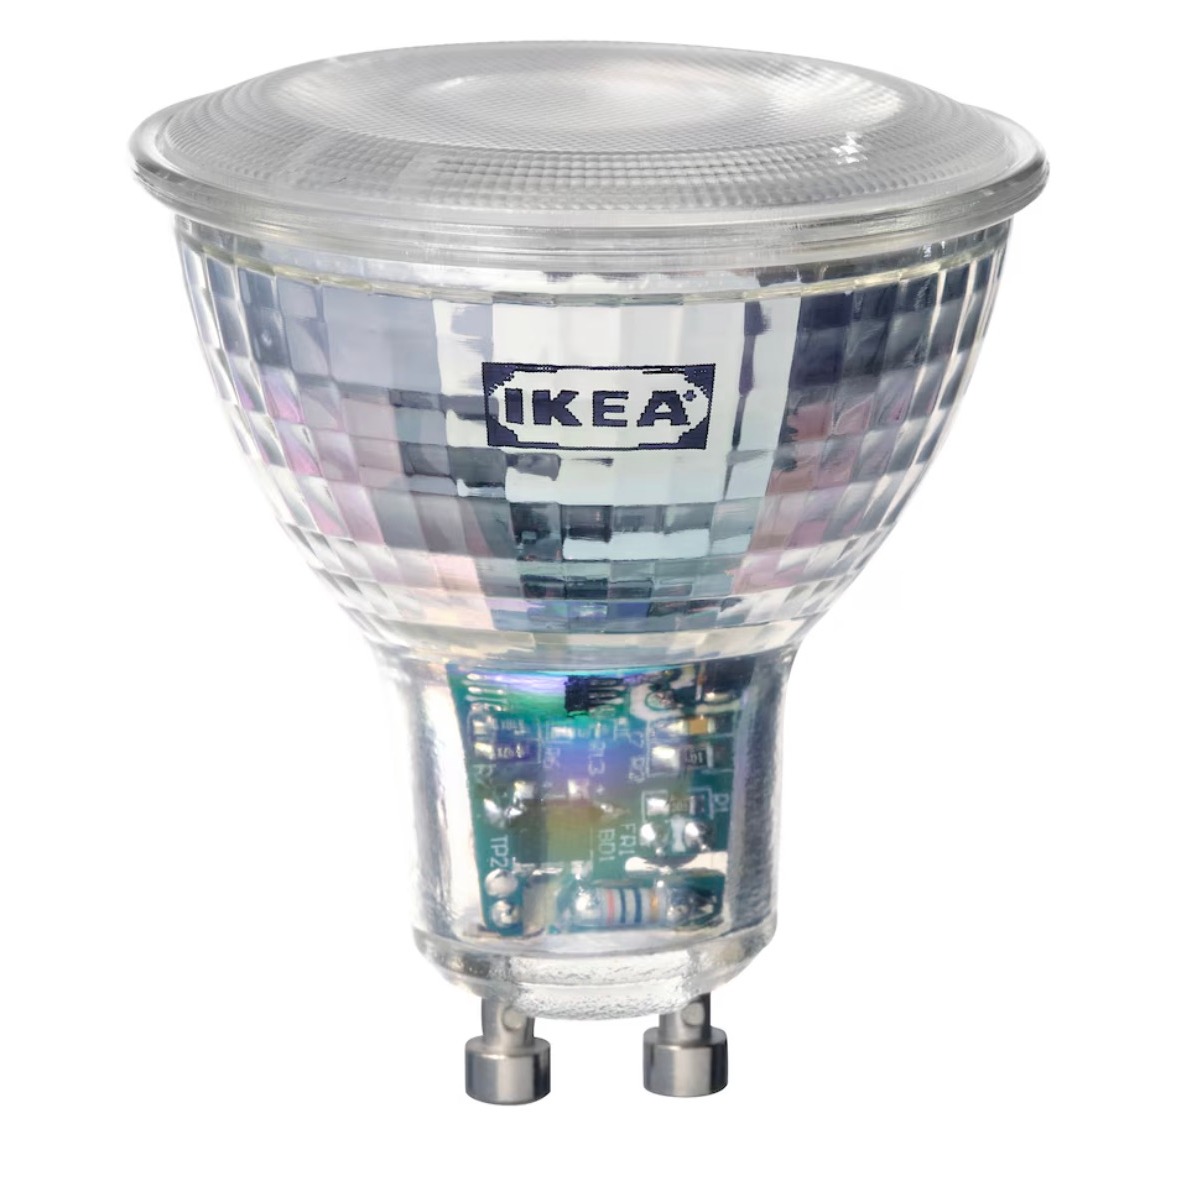 ikea ha lanzado su nueva luminaria superventas. el nuevo modelo llega con colores y conectada a internet